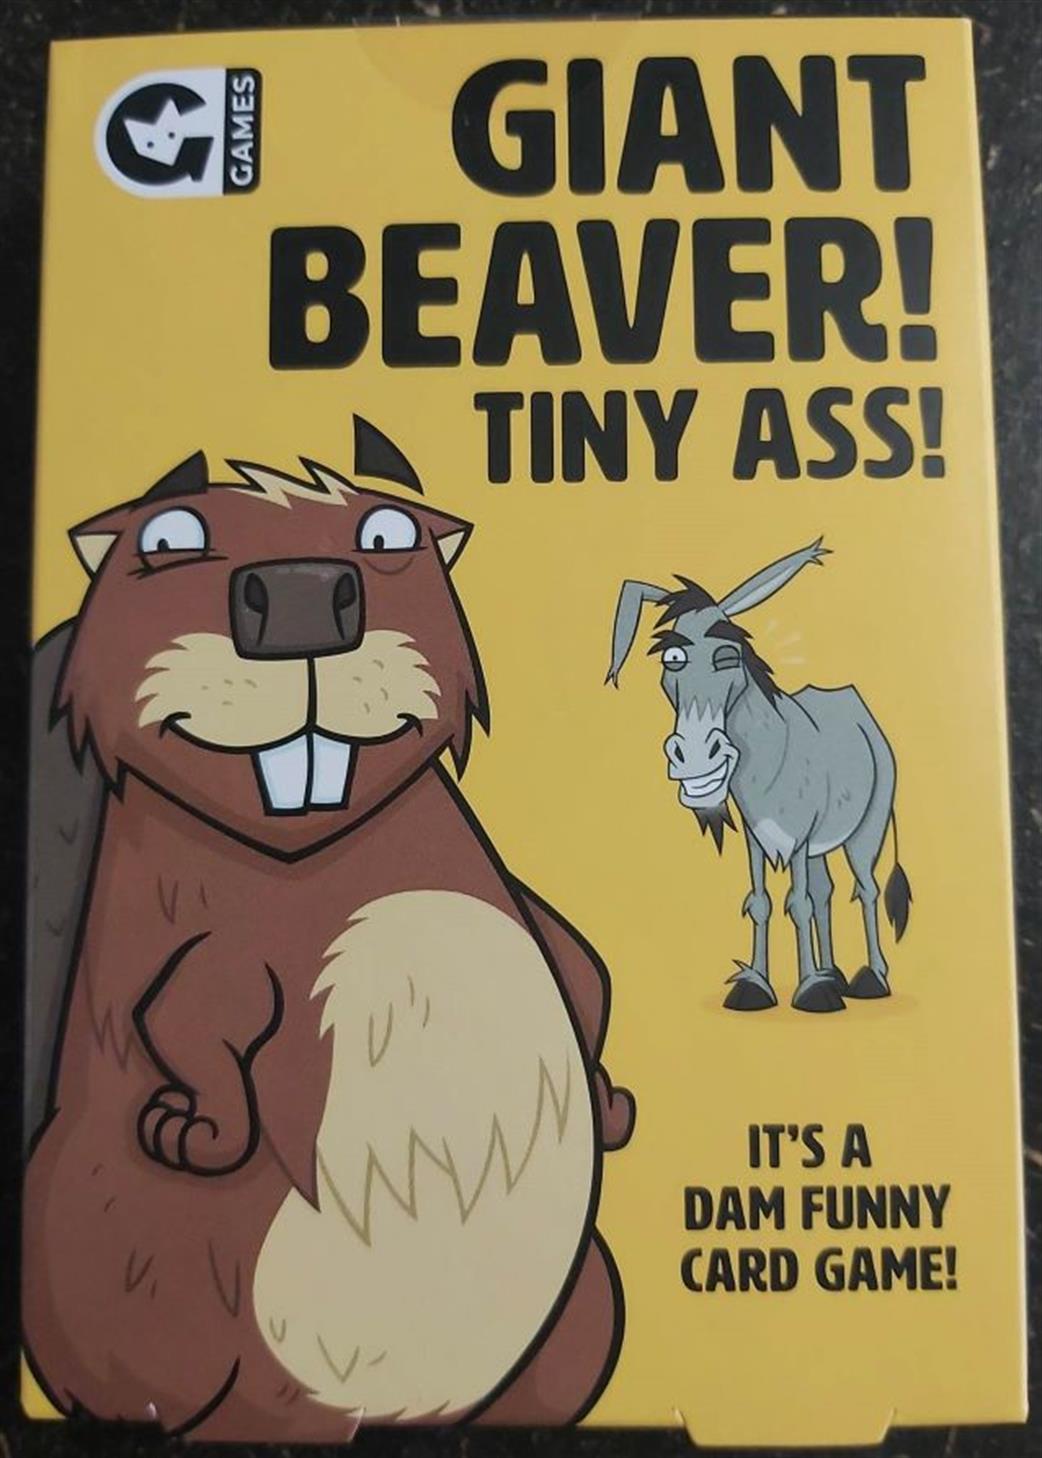 GIN0112130371 Giant Beaver! Tiny Ass! Card Game